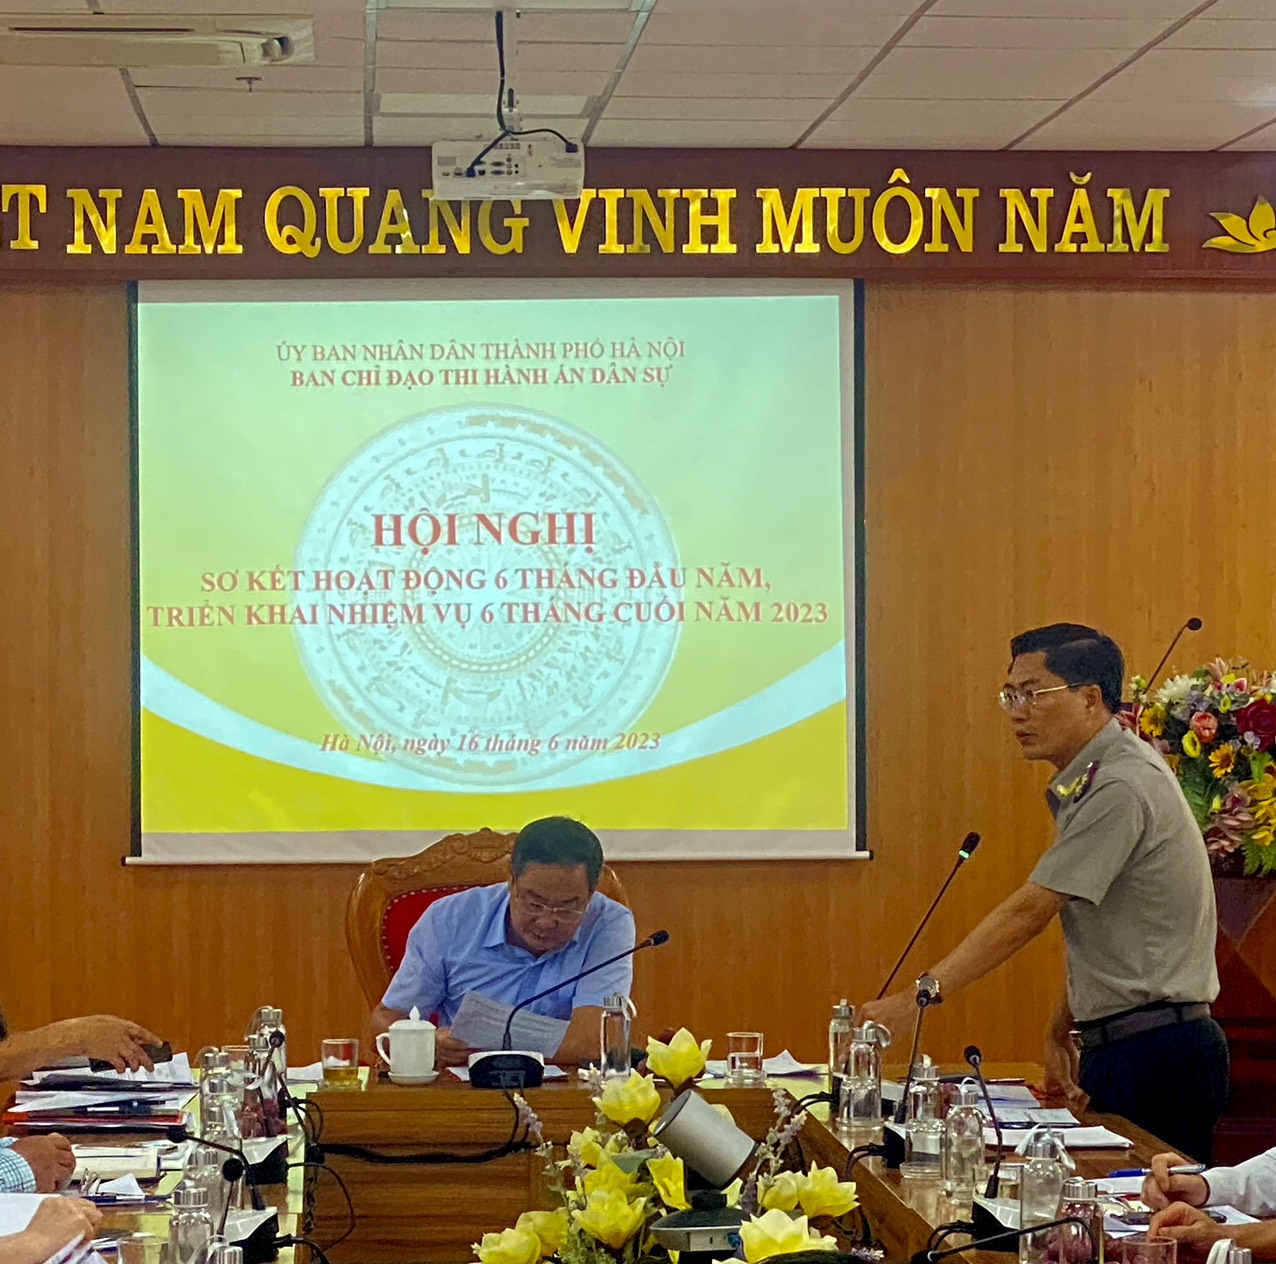 Ban Chỉ đạo Thi hành án dân sự (THADS) thành phố Hà Nội  sơ kết hoạt động 6 tháng đầu năm, triển khai nhiệm vụ 6 tháng cuối năm 2023